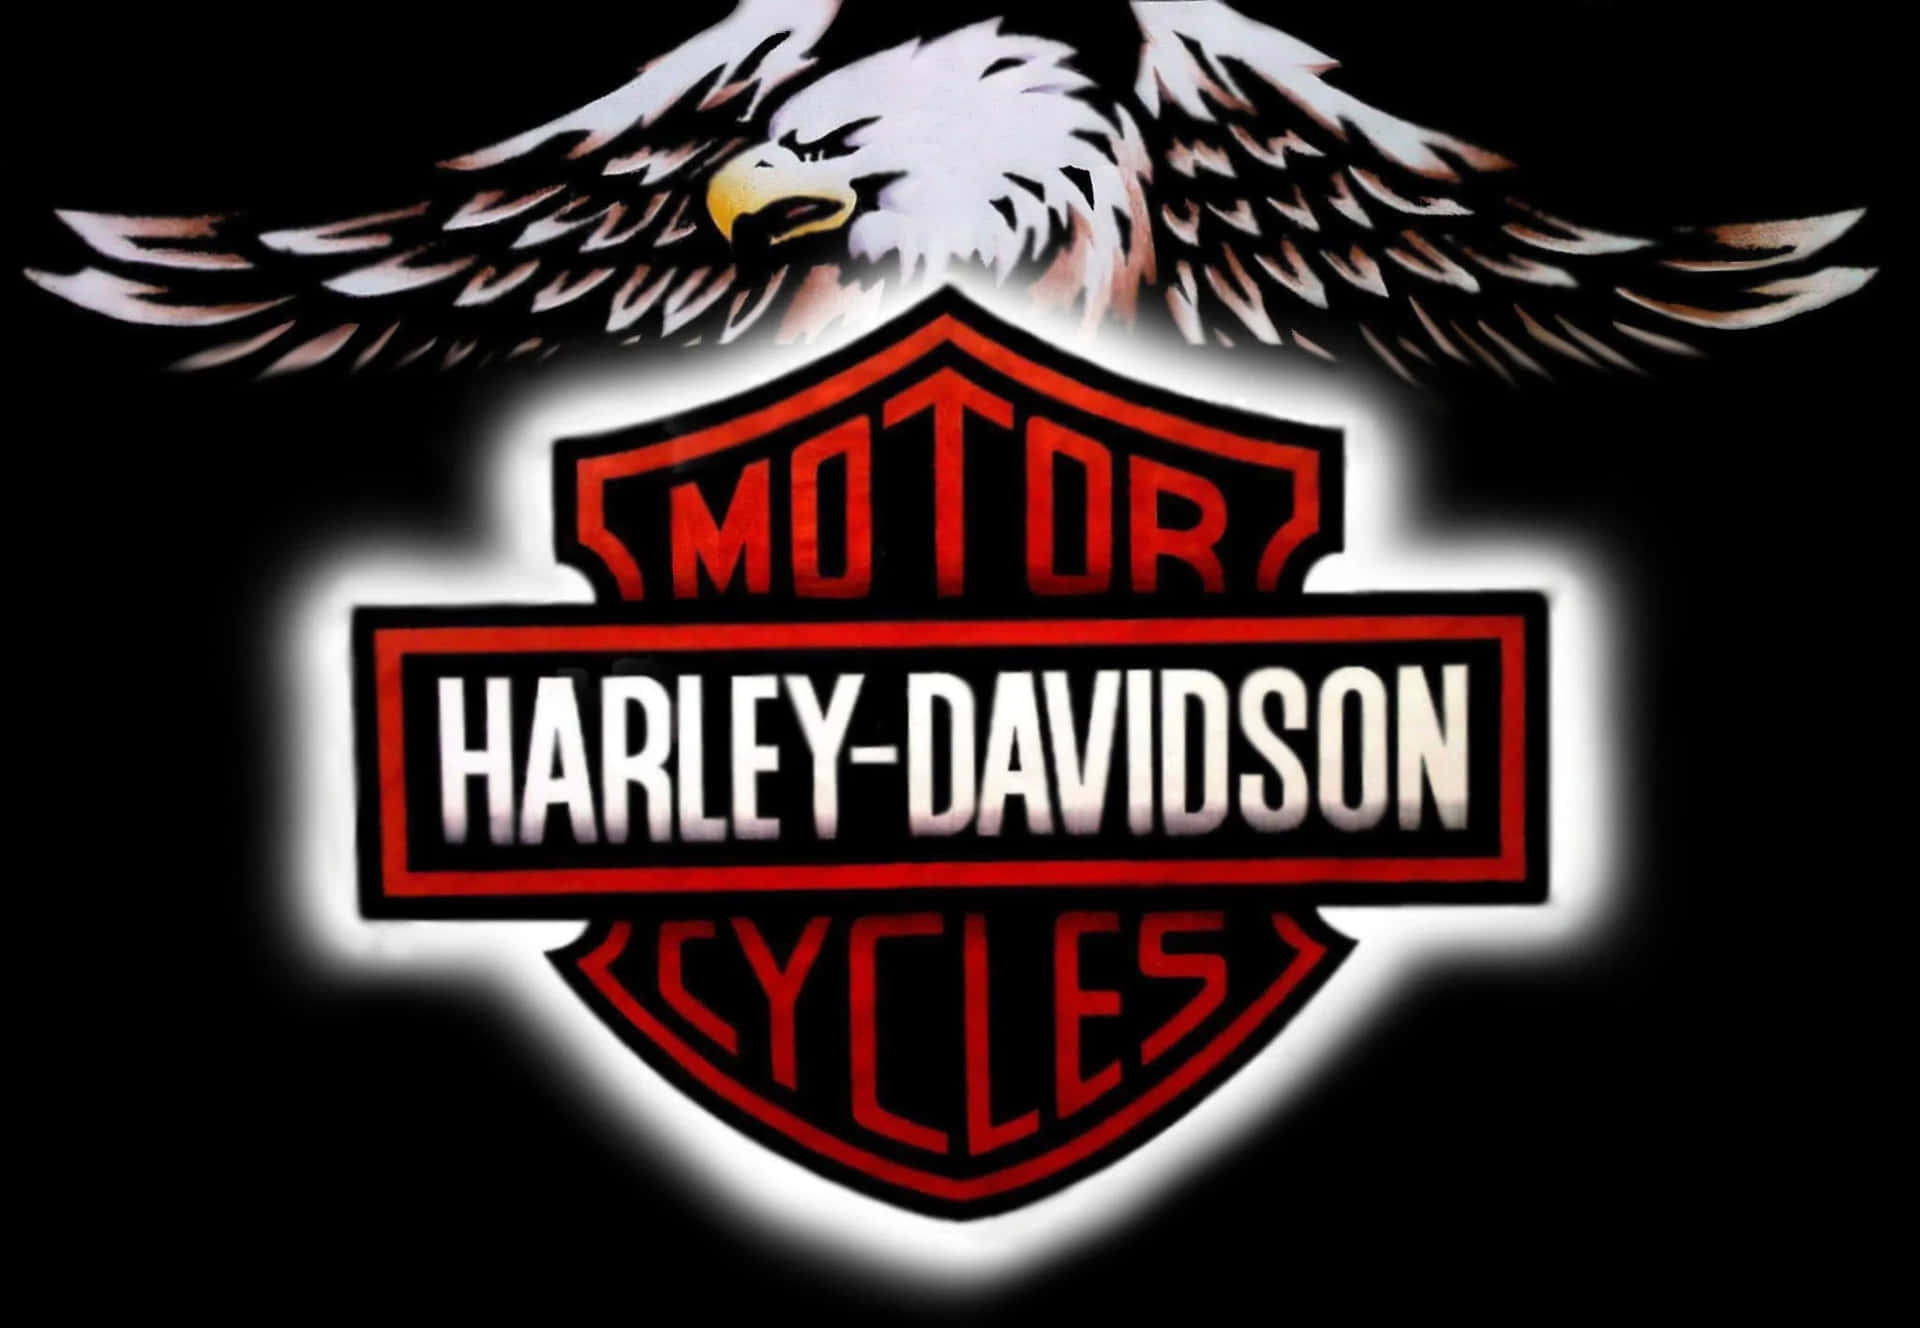 Fondode Pantalla Con El Logotipo Original De Harley Davidson.